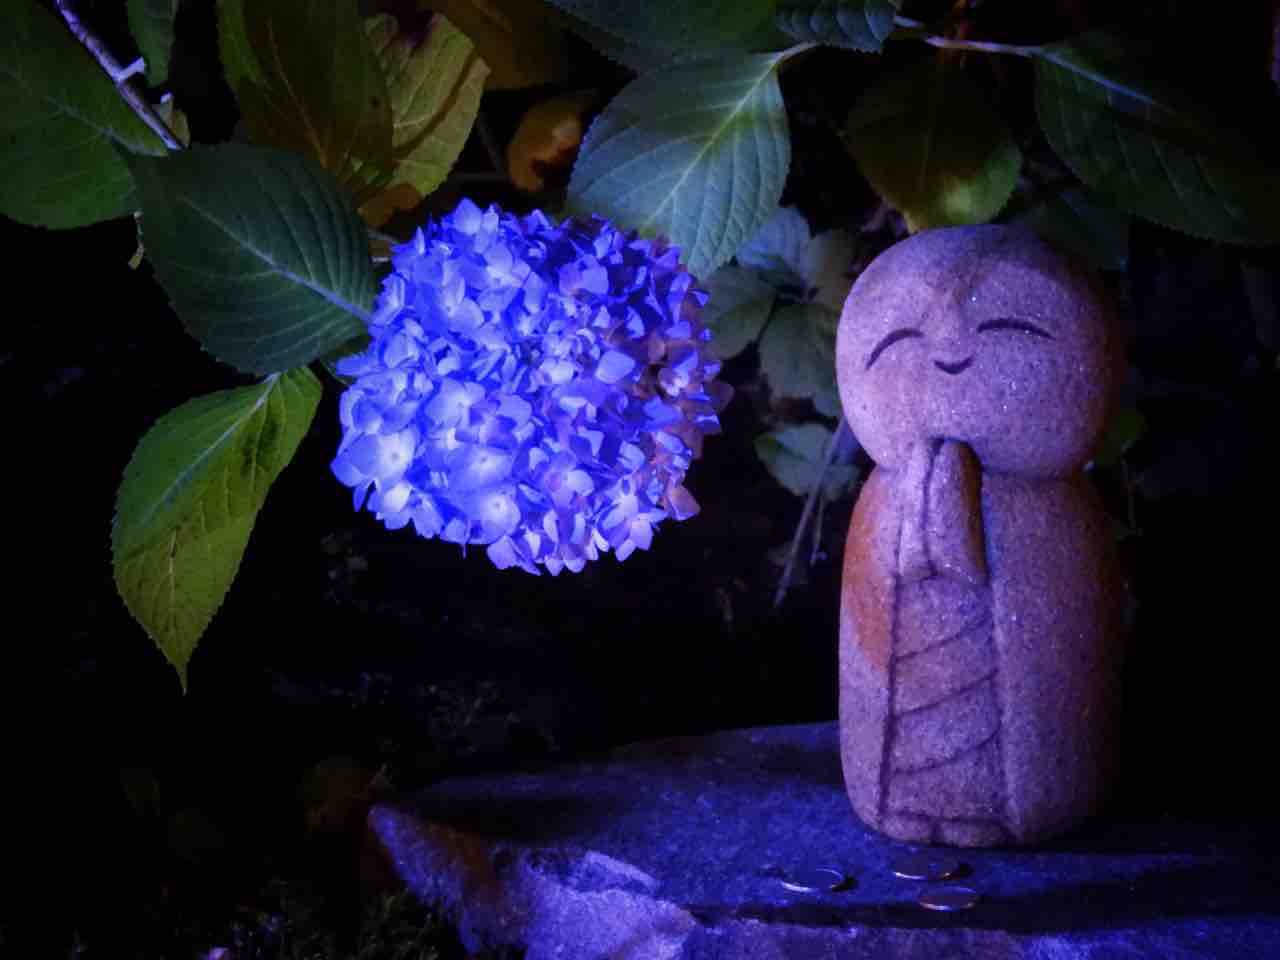 秋田 闇夜に浮かぶ瑠璃色の絨毯 雲昌寺の紫陽花 何度でも訪れたい日本の風景